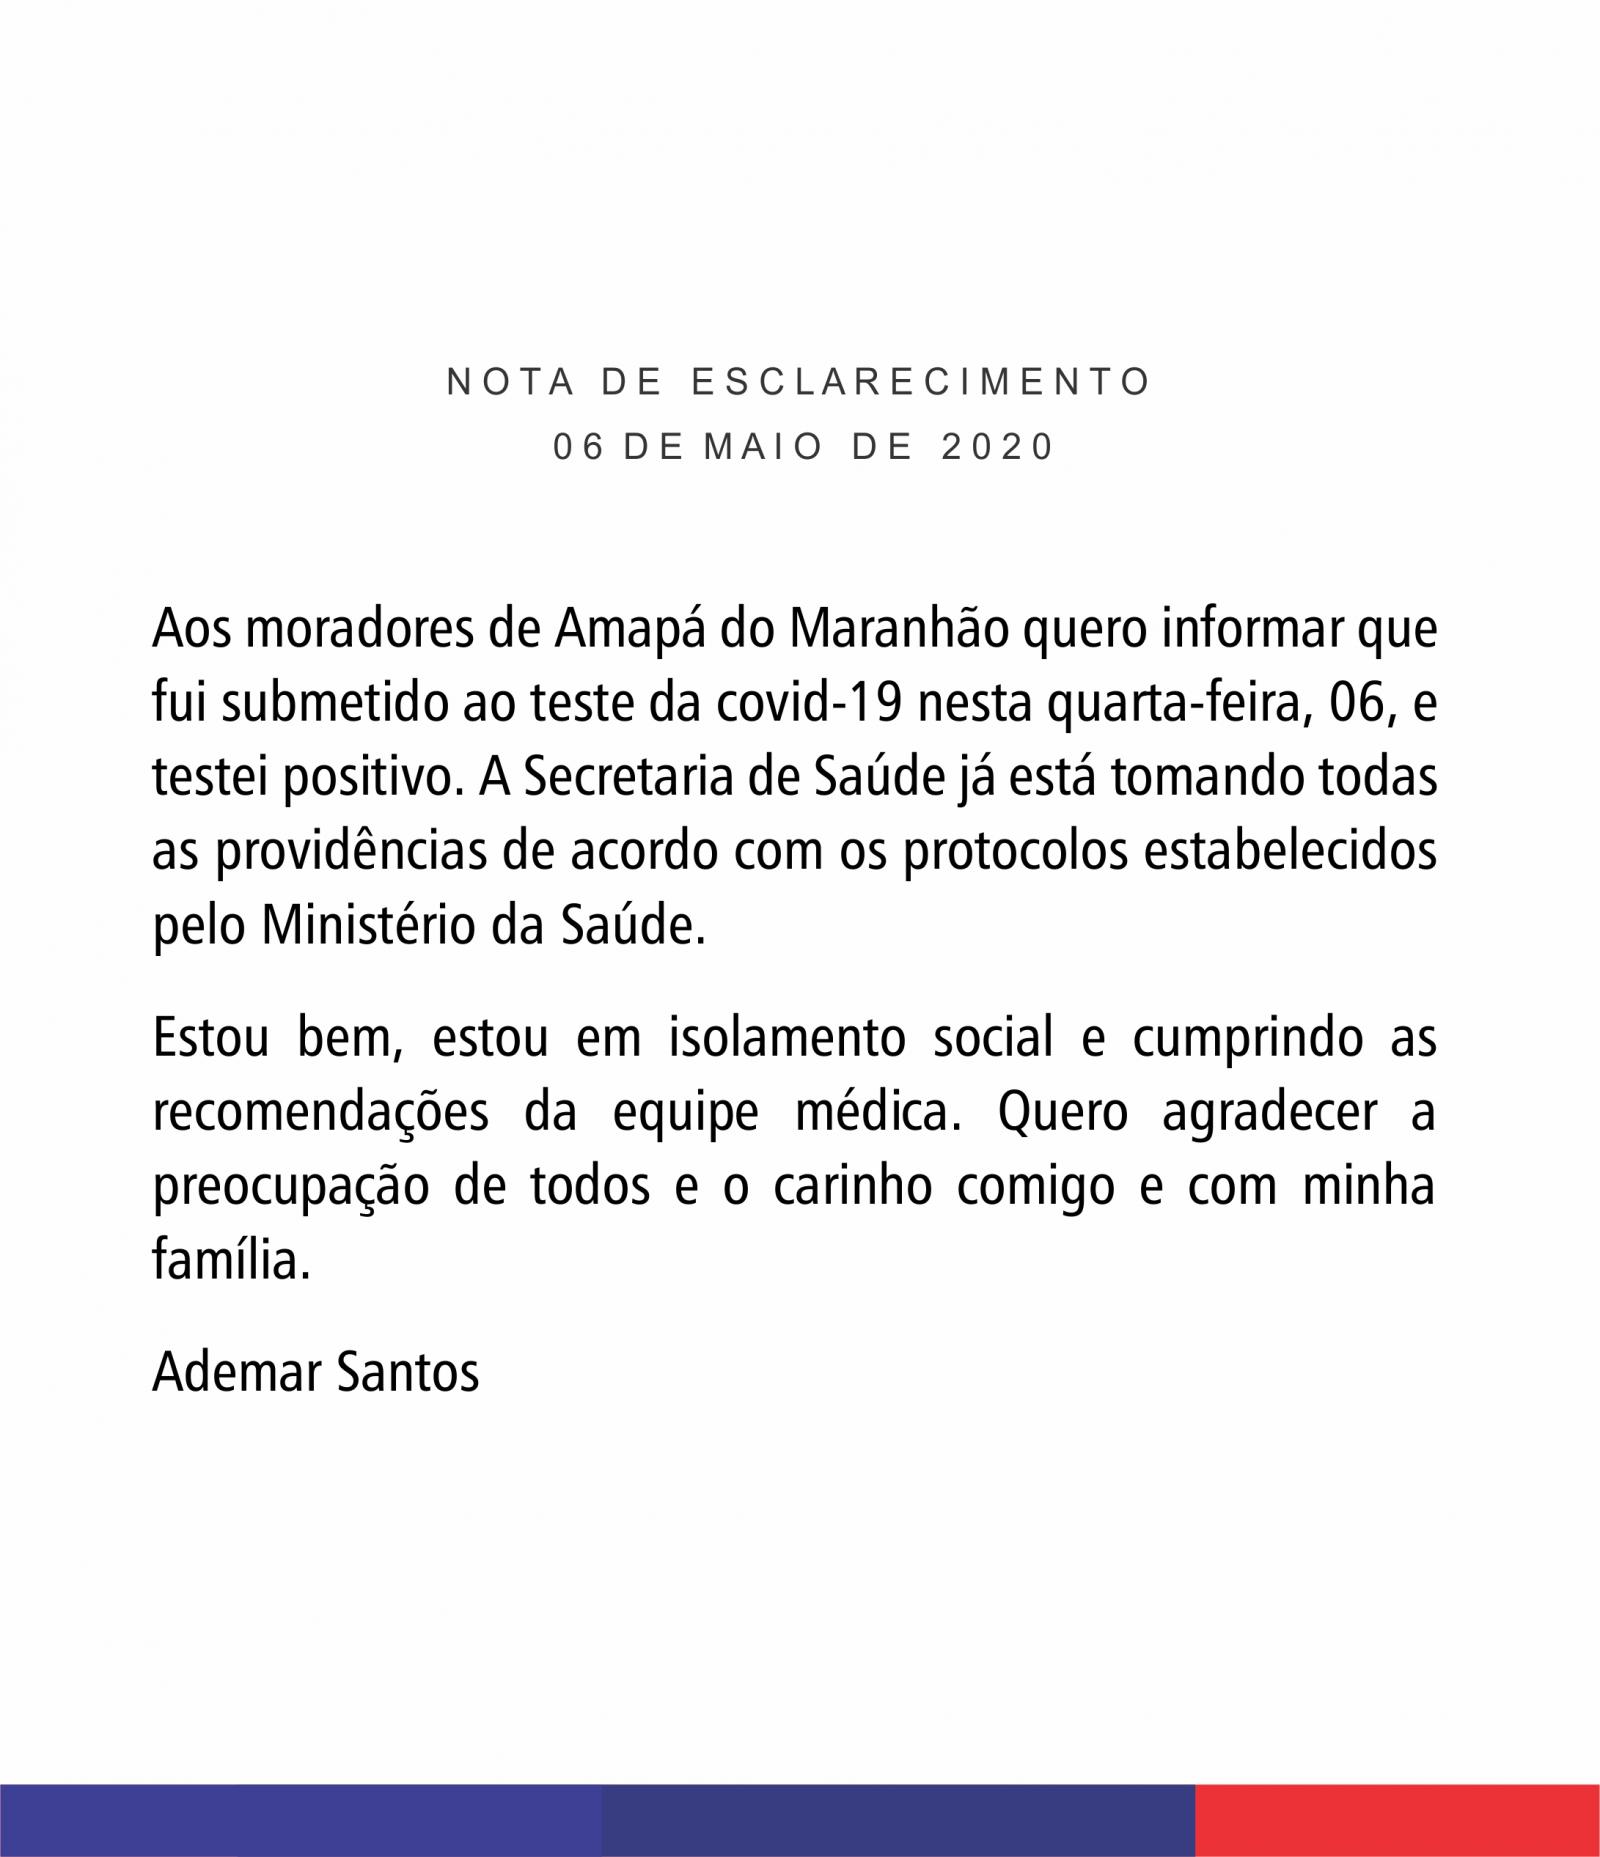 Ademar Santos testa positivo para covid-19